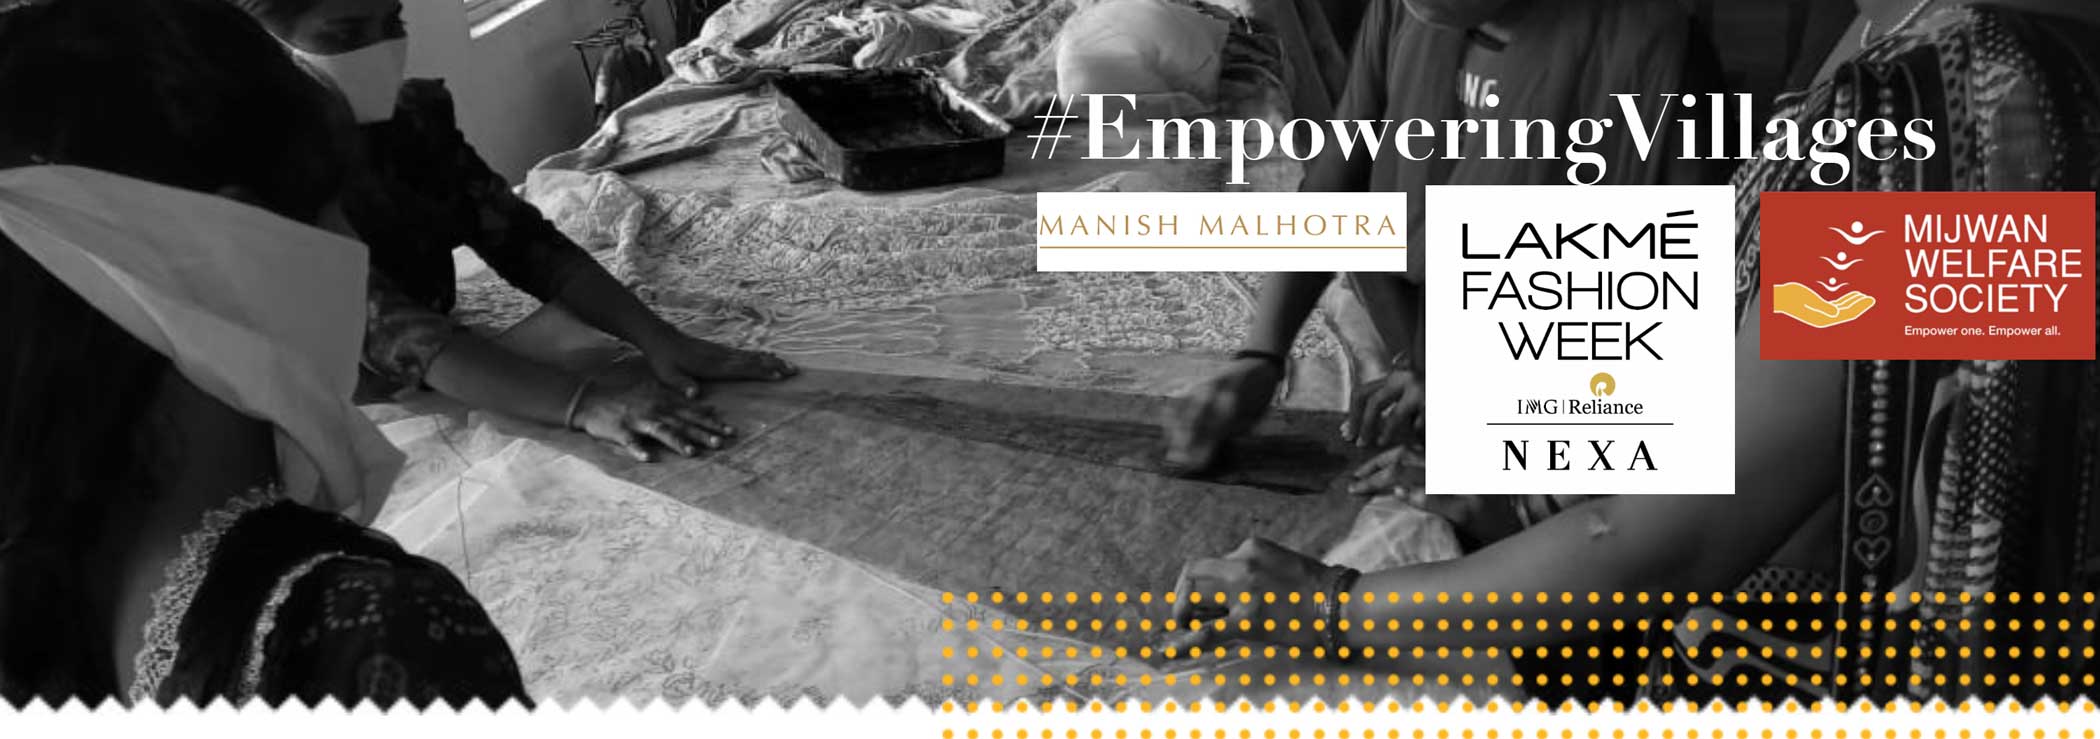 #EmpoweringVillages with Manish Malhotra and Lakme Fashion Week